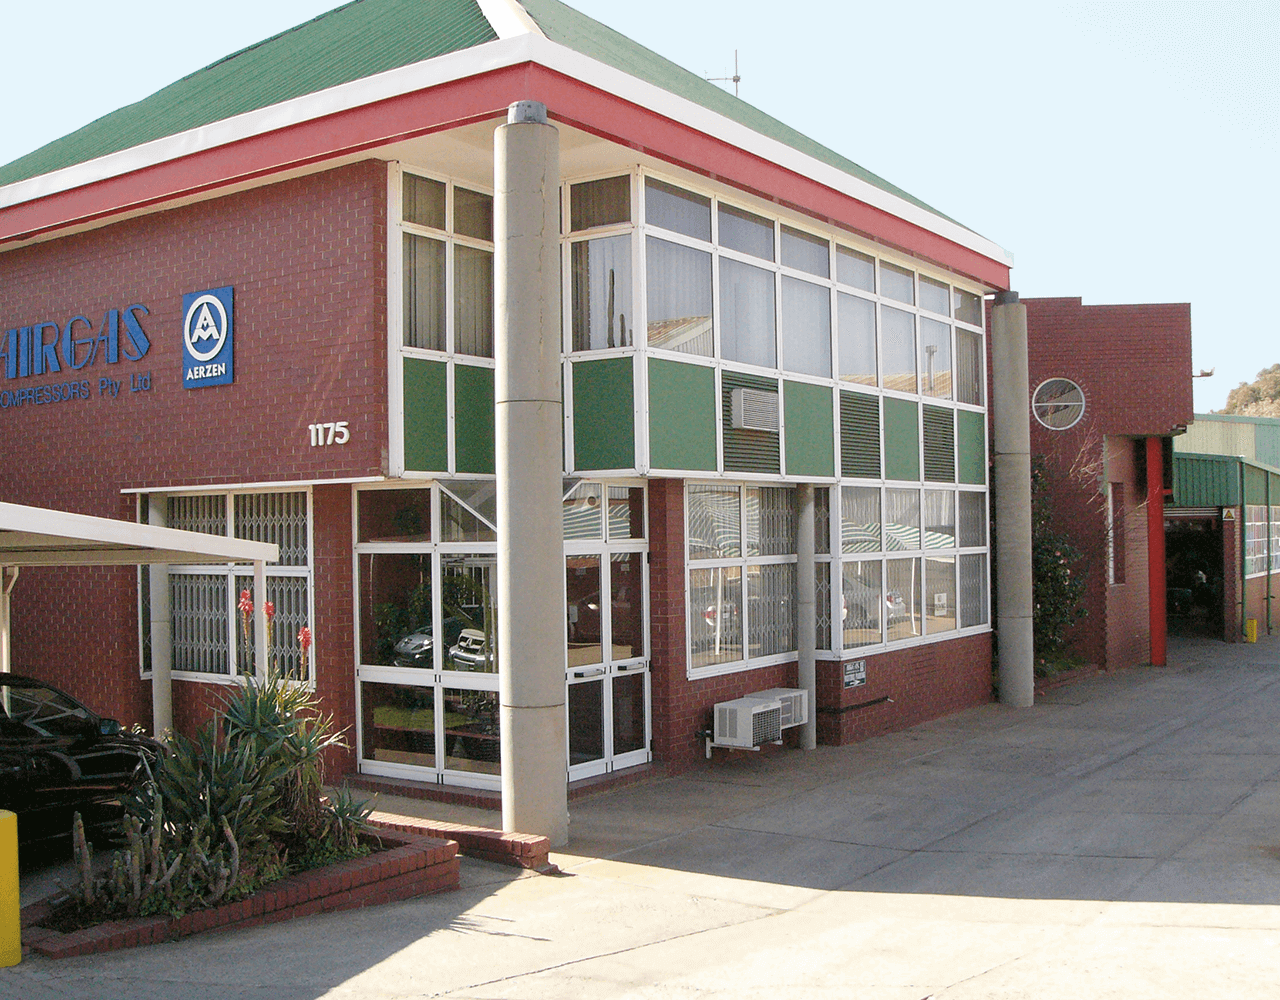 Foto dell'edificio della Airgas Compressor in Sud Africa